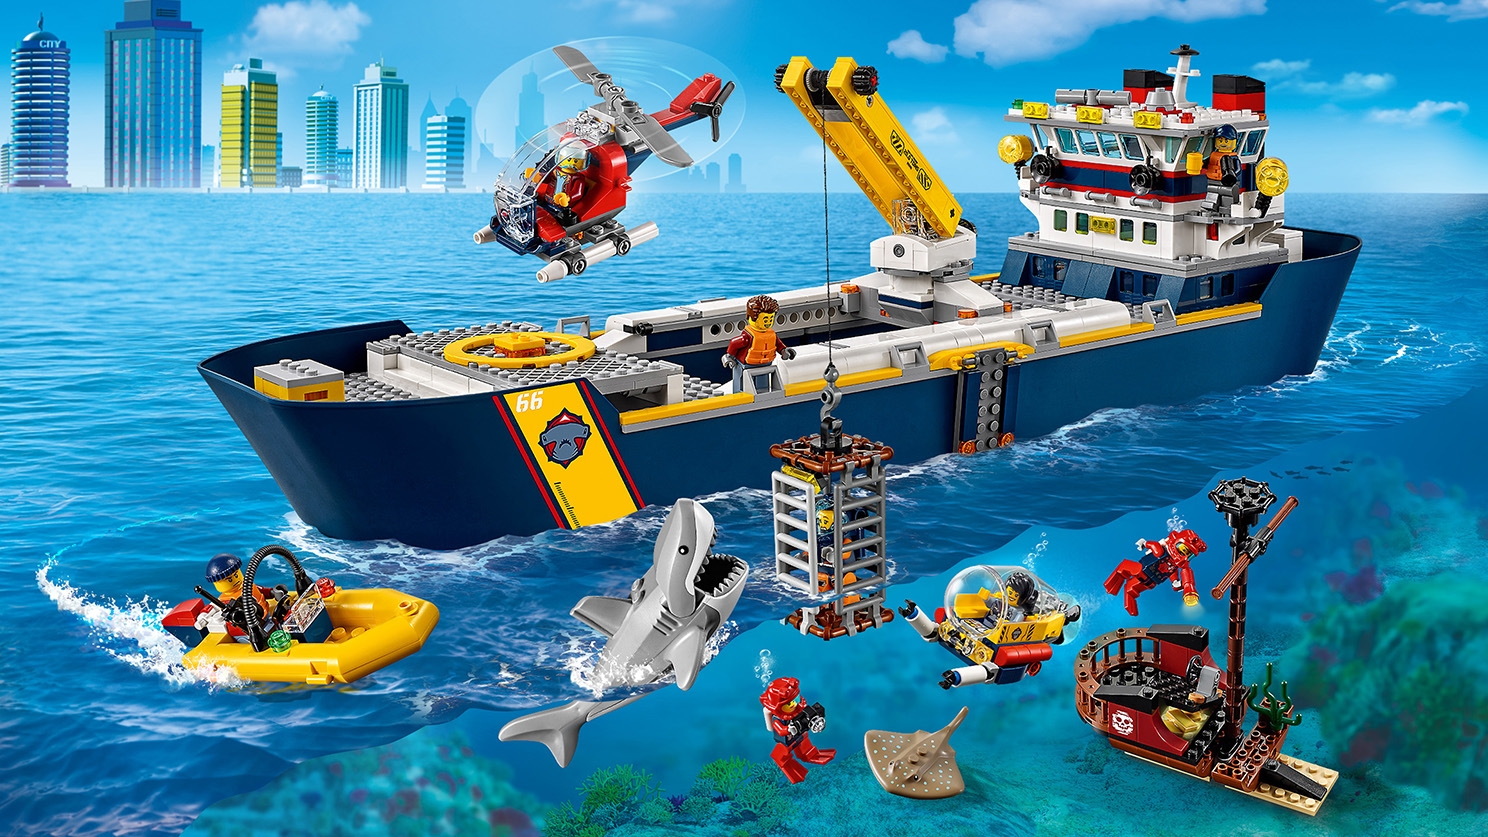 Gentagen nabo Gurgle Ocean Exploration Ship 60266 - LEGO® City Sets - LEGO.com for kids